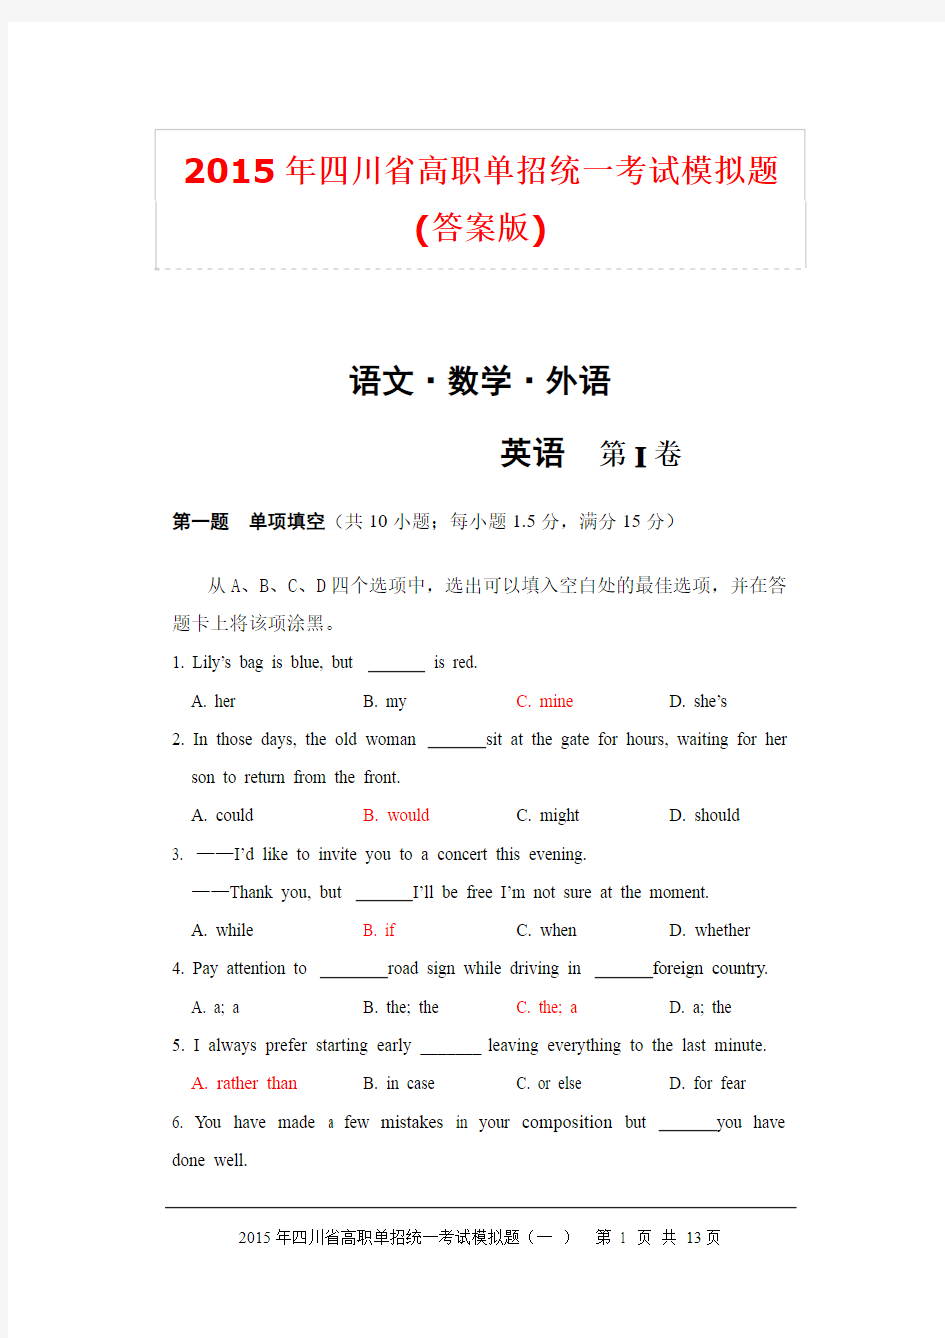 2015年四川省高职单招统一考试英语模拟题-文中含答案(标红处)